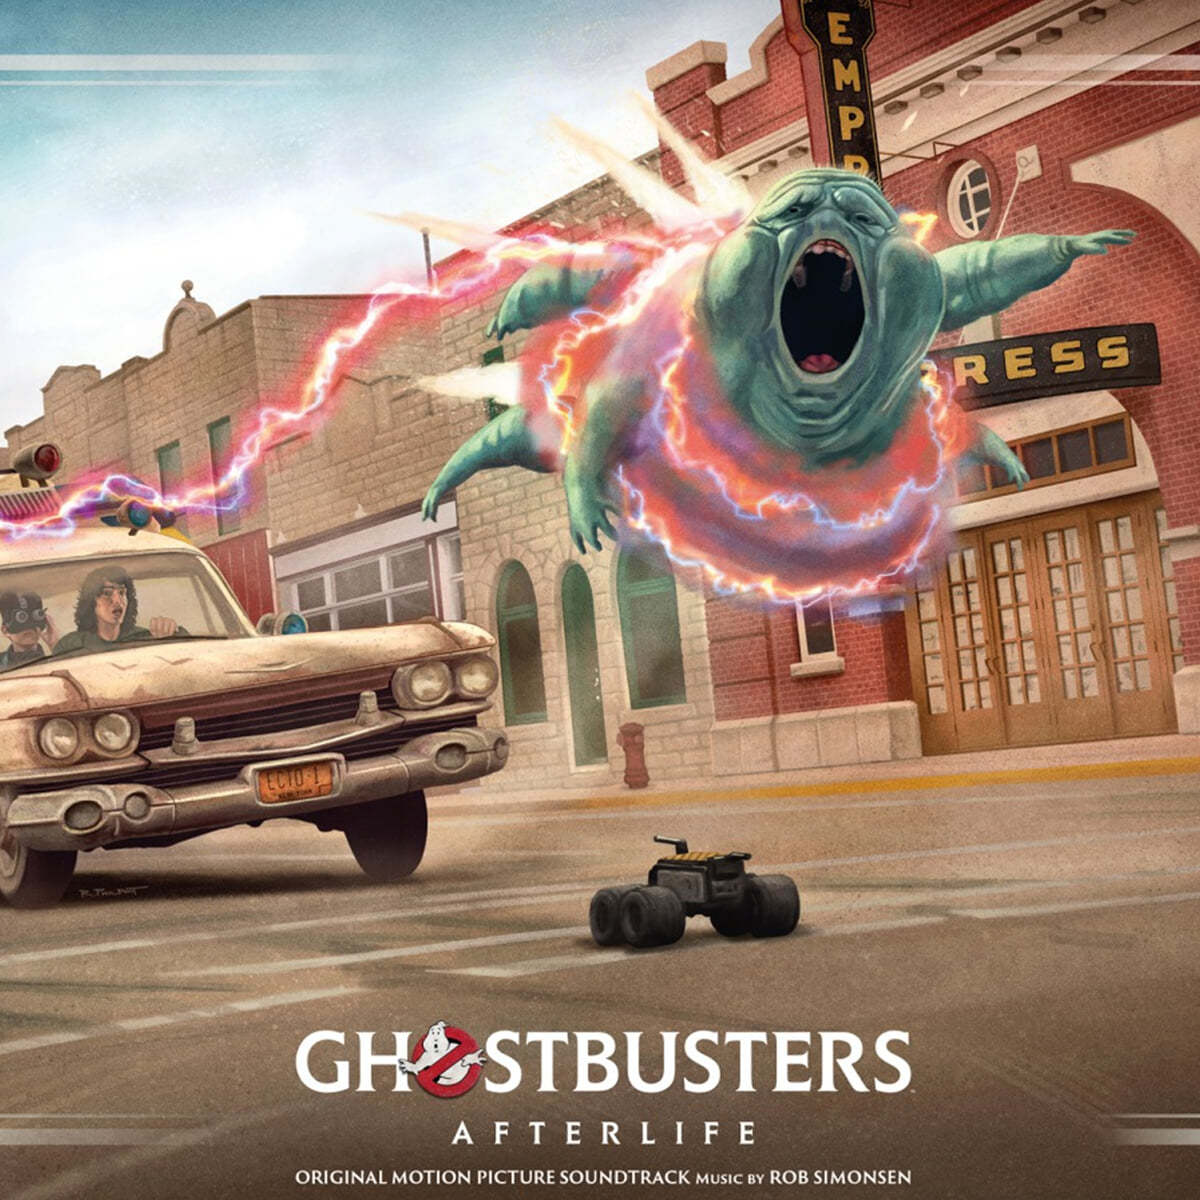 고스트버스터즈 라이즈 영화음악 (Ghostbusters: Afterlife OST by Rob Simonsen) [민트 컬러 LP]